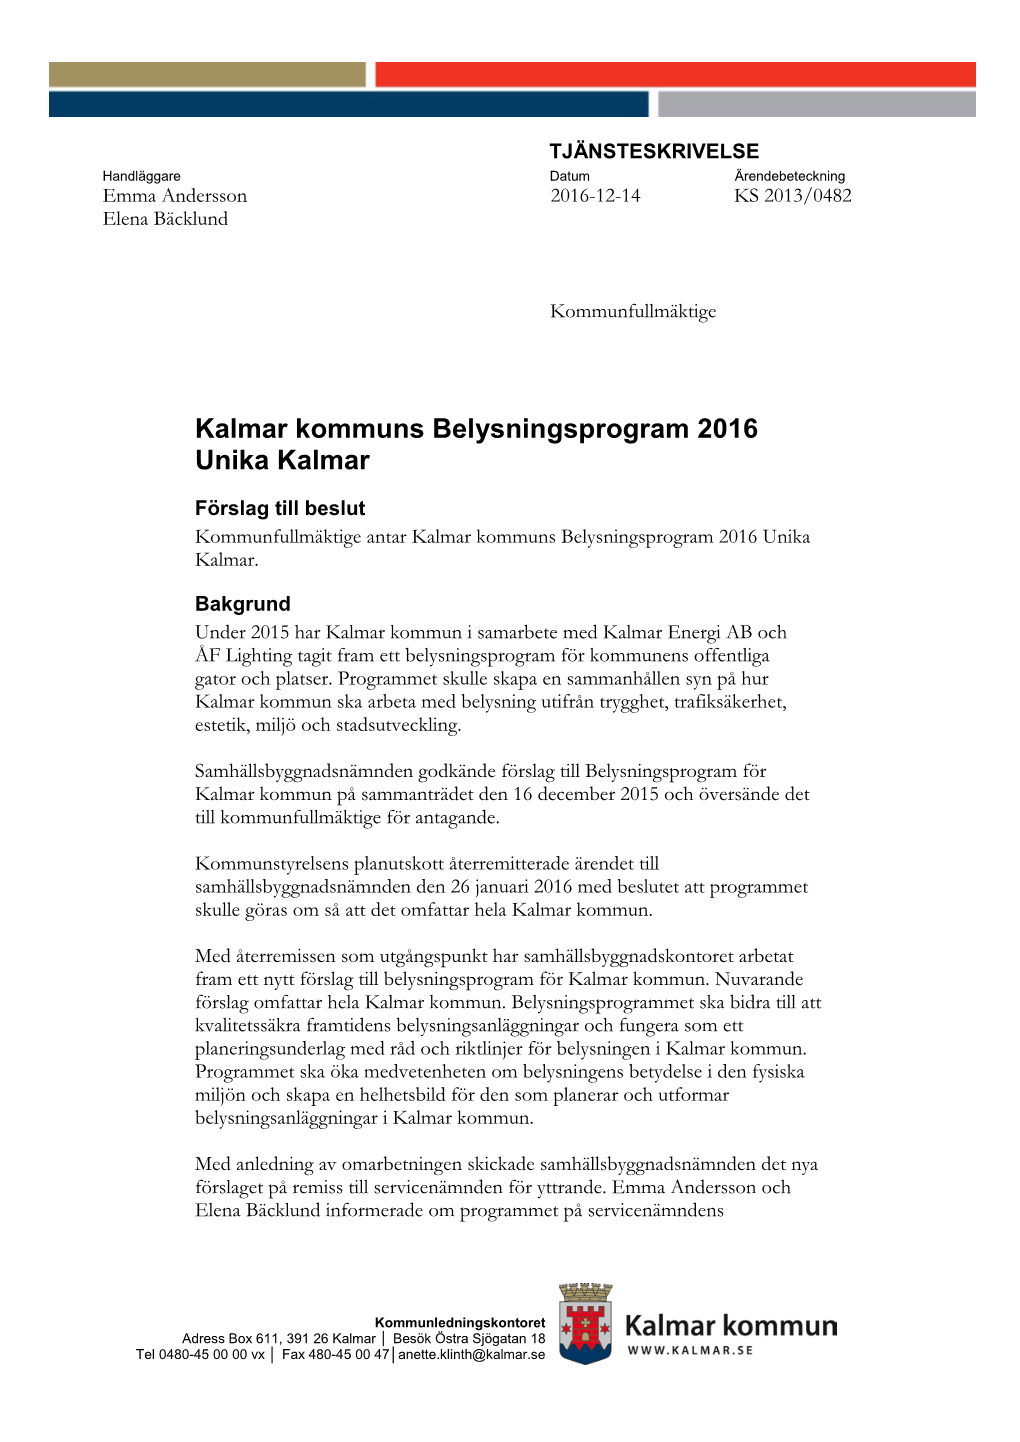 Kalmar Kommuns Belysningsprogram 2016 Unika Kalmar